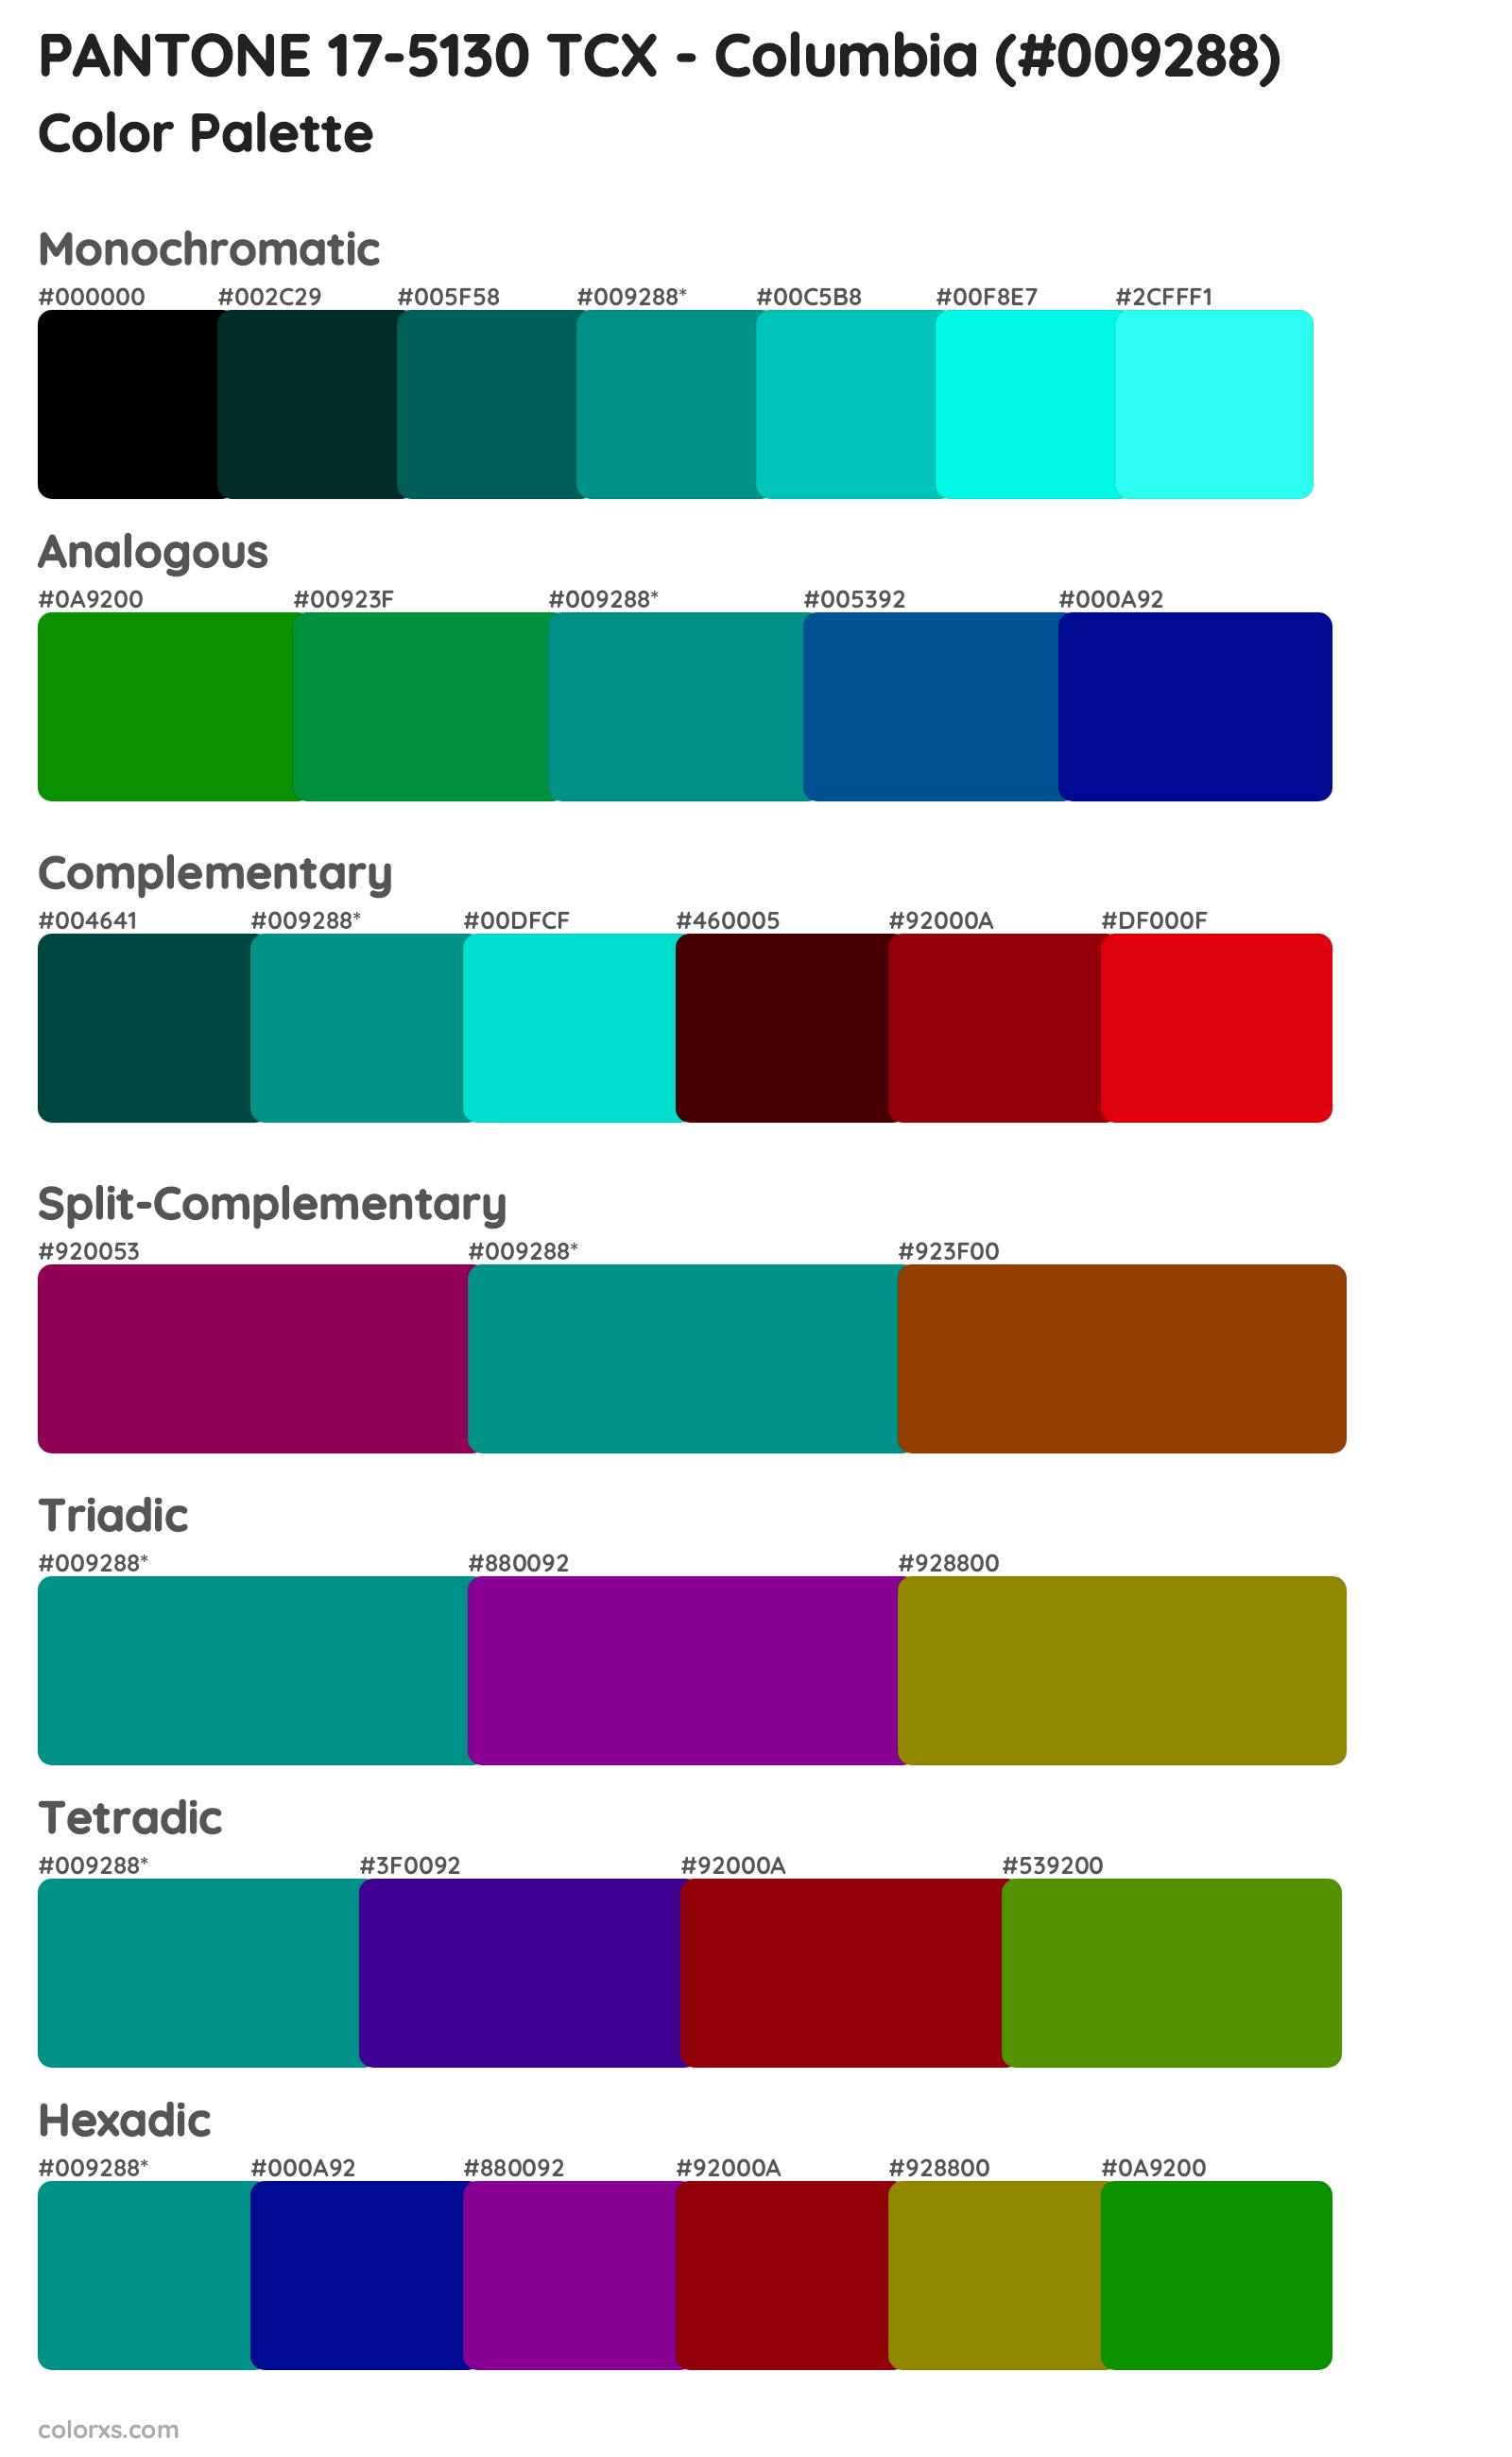 PANTONE 17-5130 TCX - Columbia Color Scheme Palettes